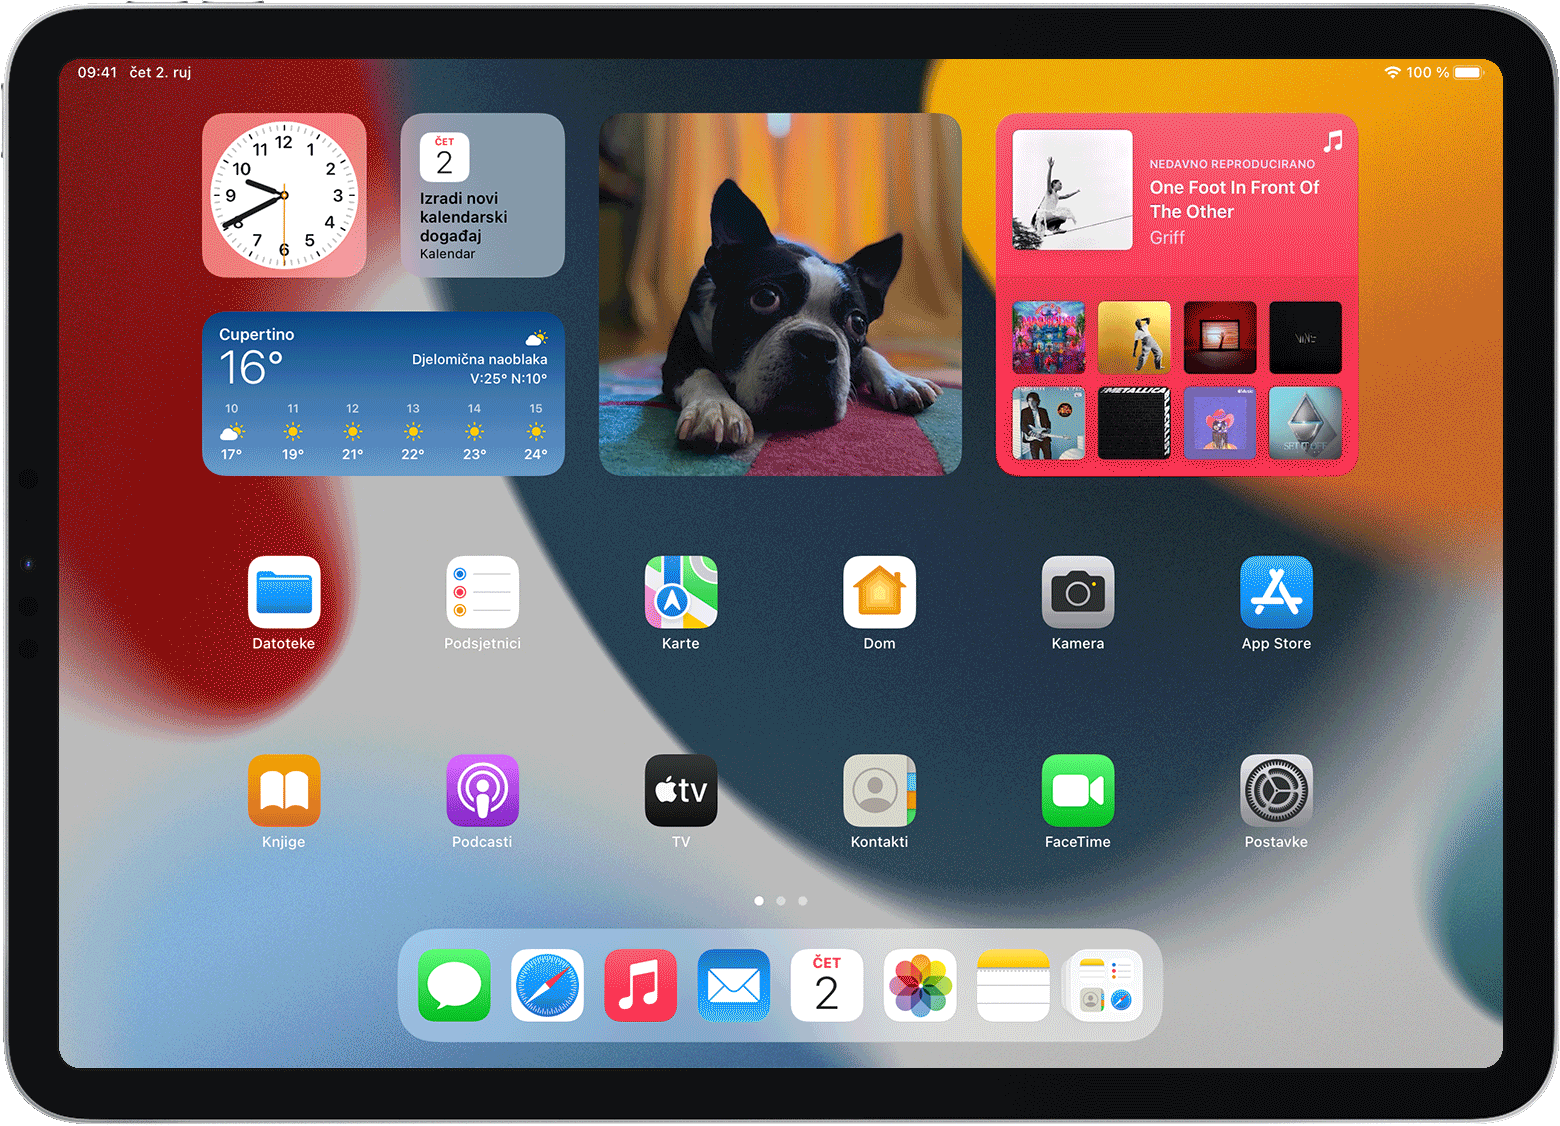 Zaslon iPad uređaja na kojem se prikazuje stog widgeta i na kojem se listaju widgeti